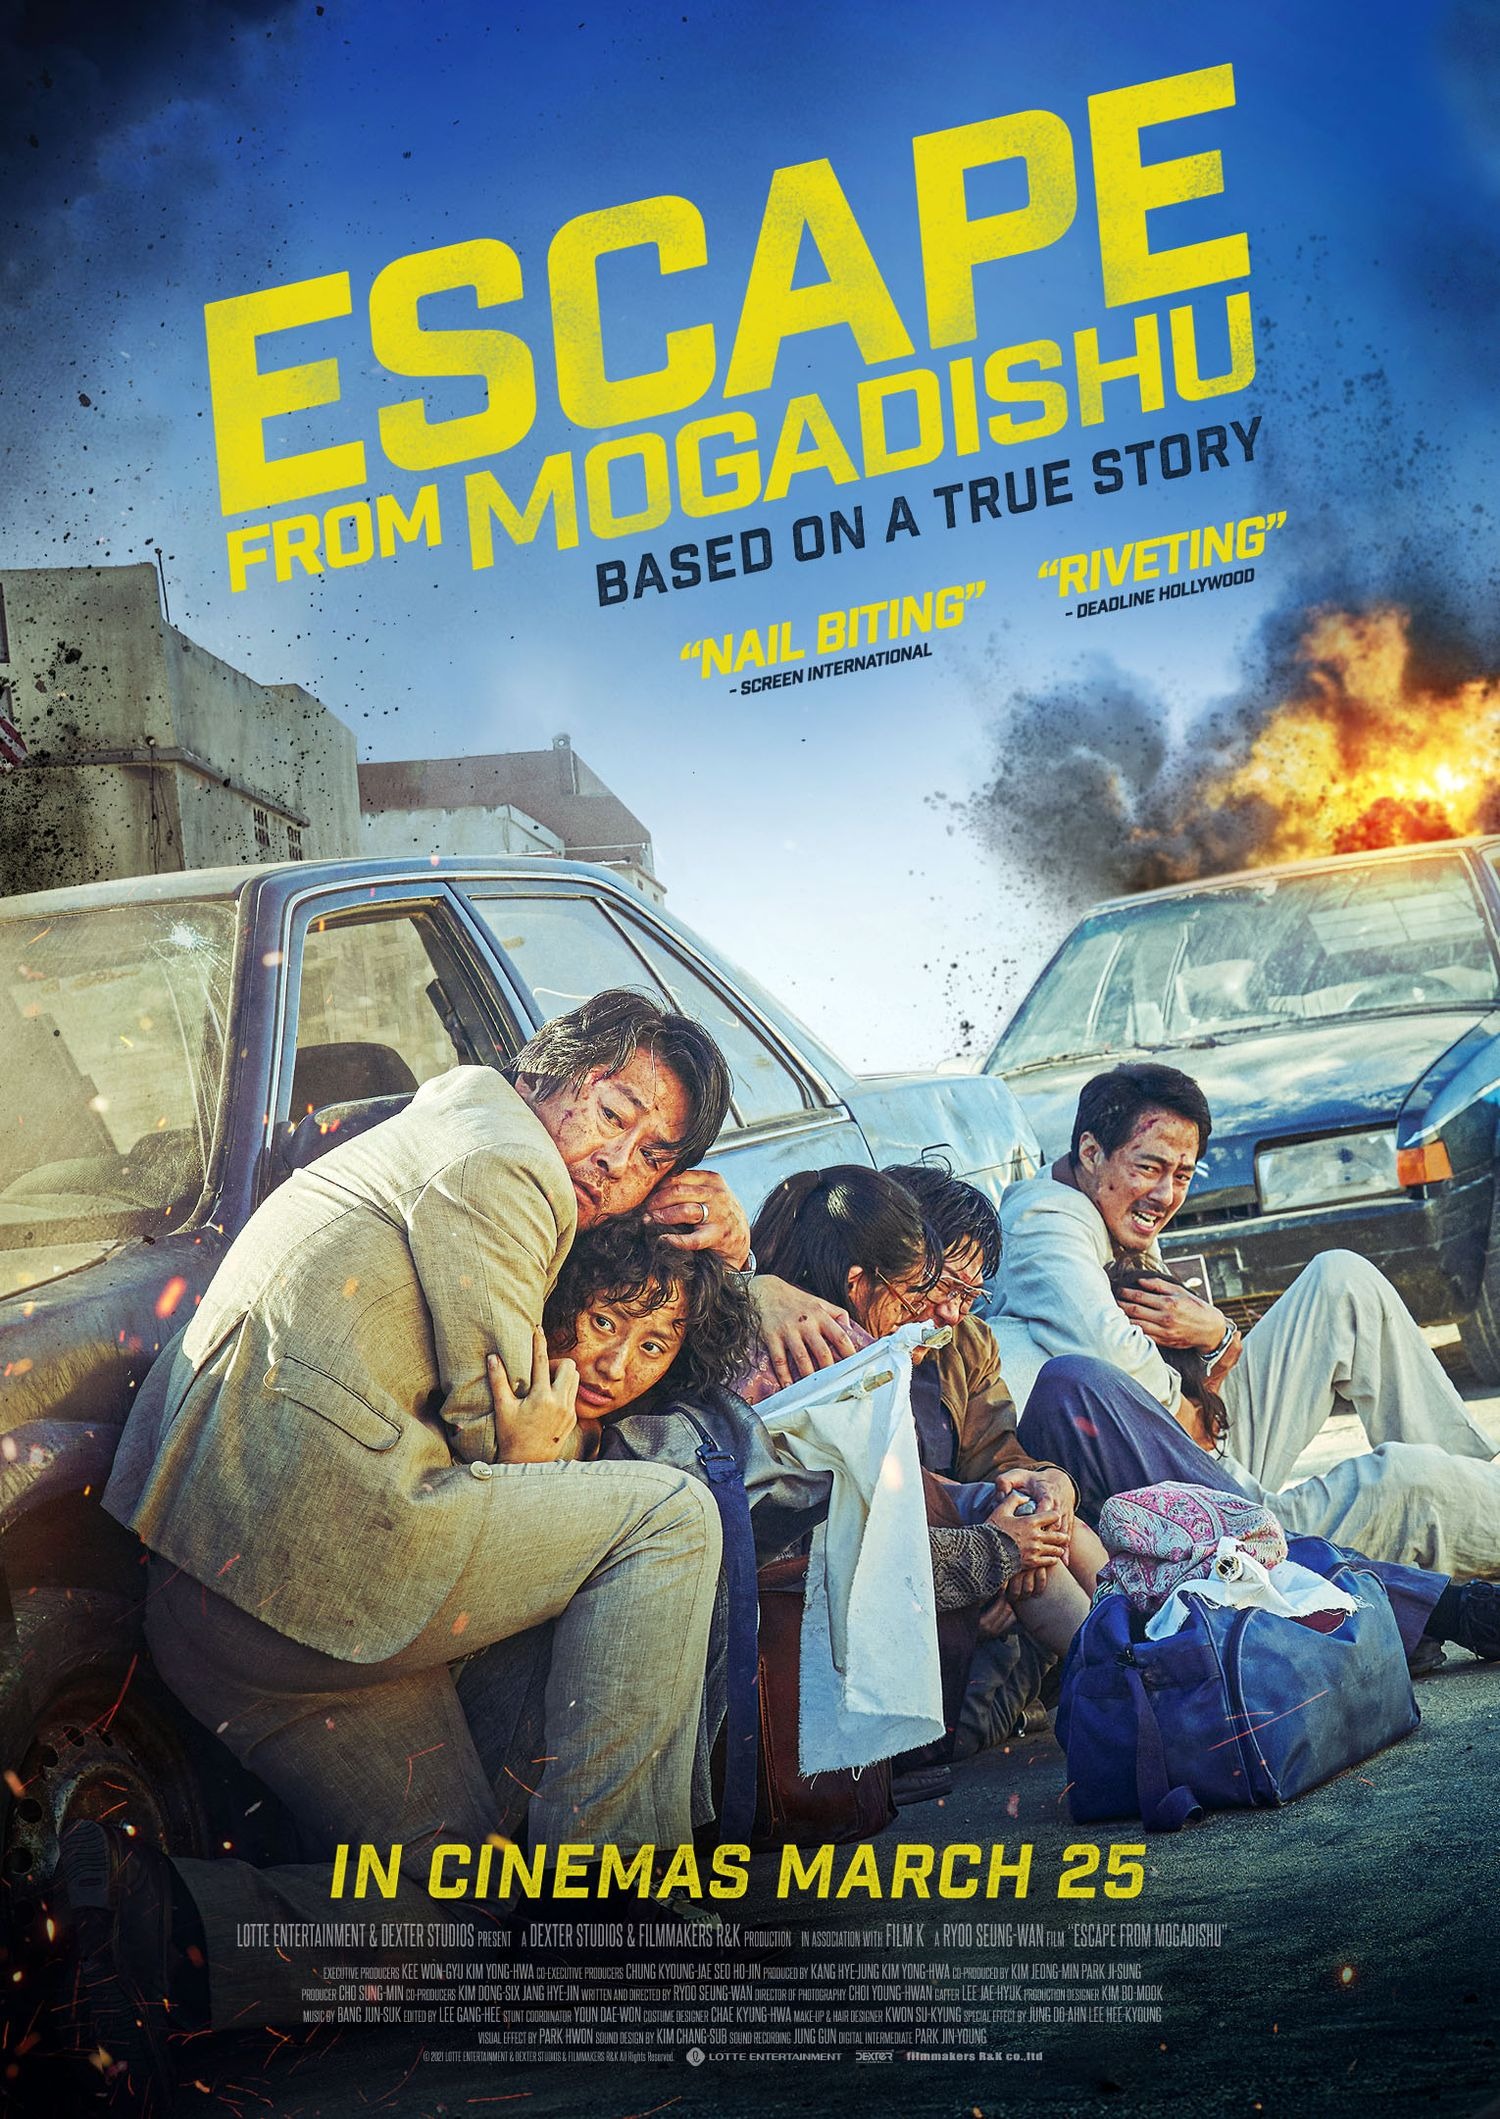 Mega Sized Movie Poster Image for Mogadishu (#2 of 2)